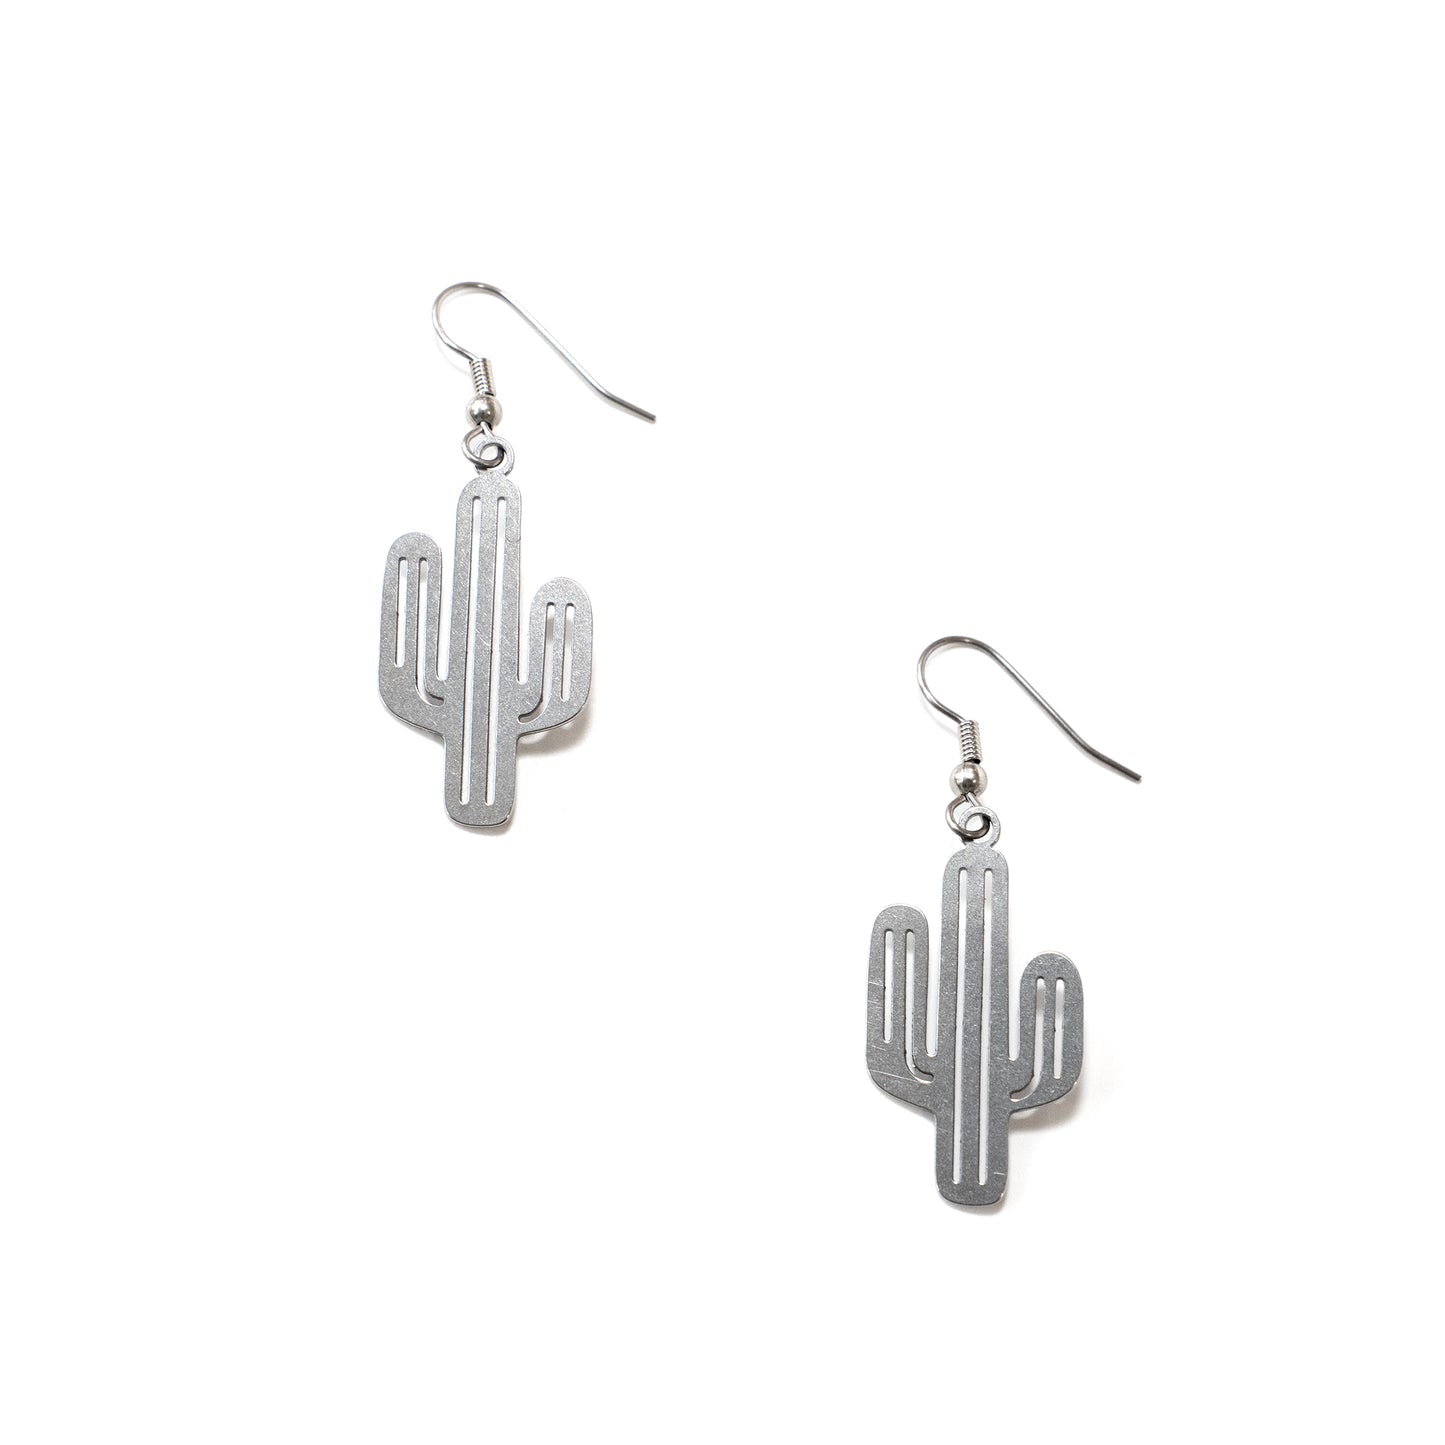 Saguaro Stainless Steel Charm Earrings